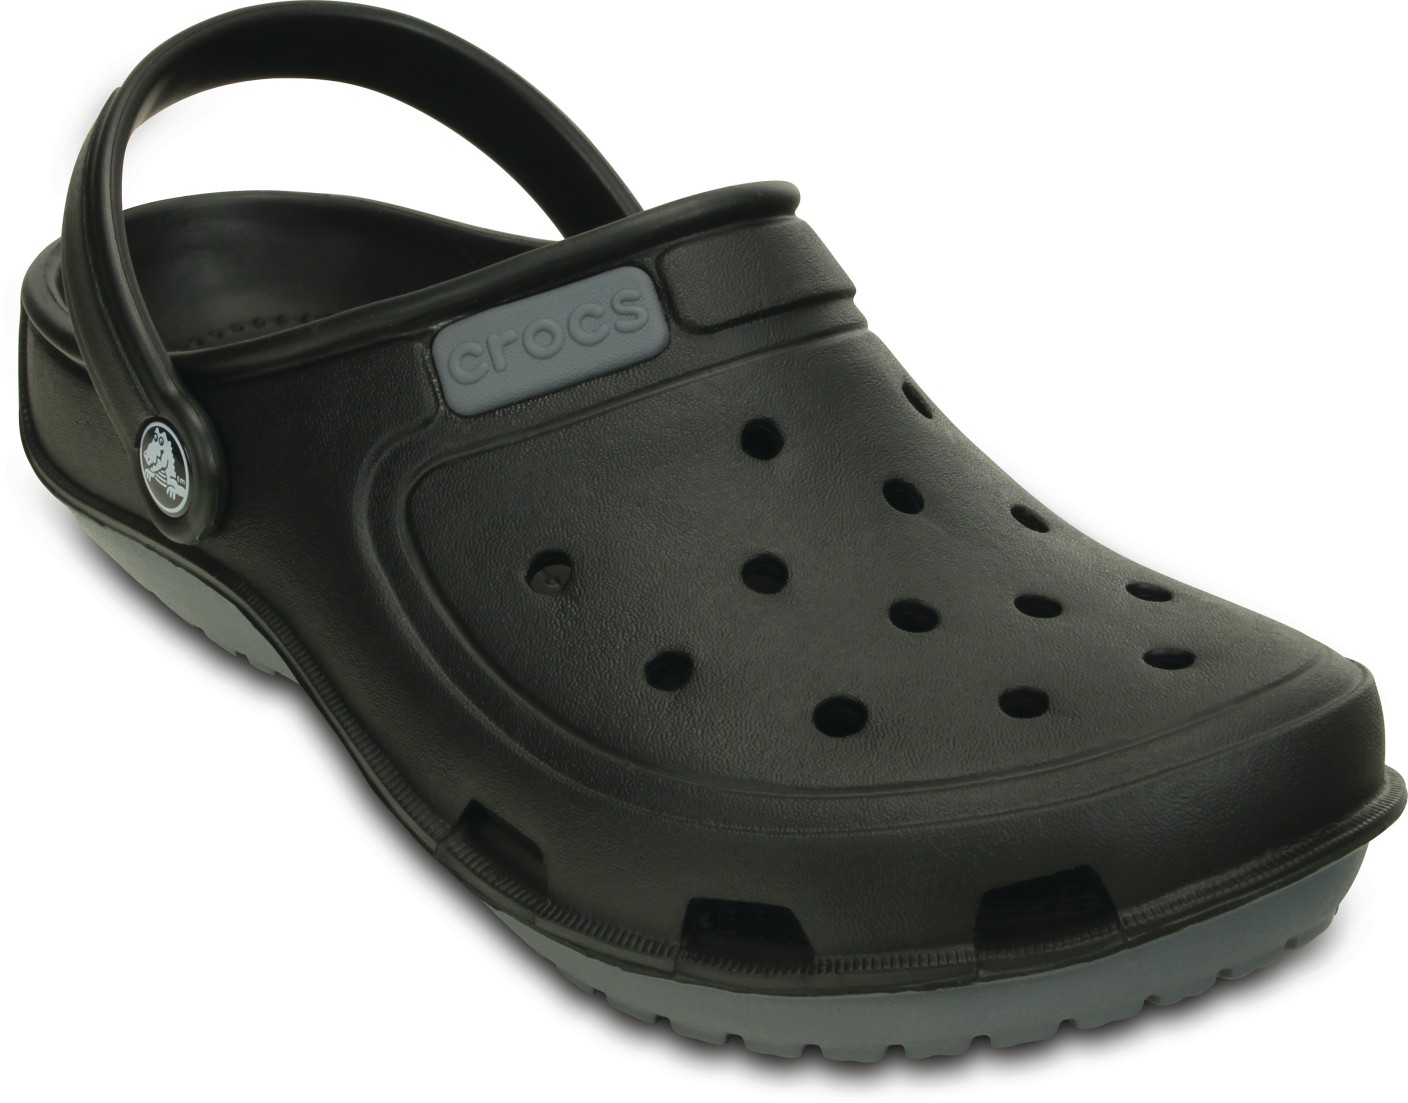 Crocs Men 200366-070 Clogs - Buy 200366-070 Color Crocs Men 200366-070 ...